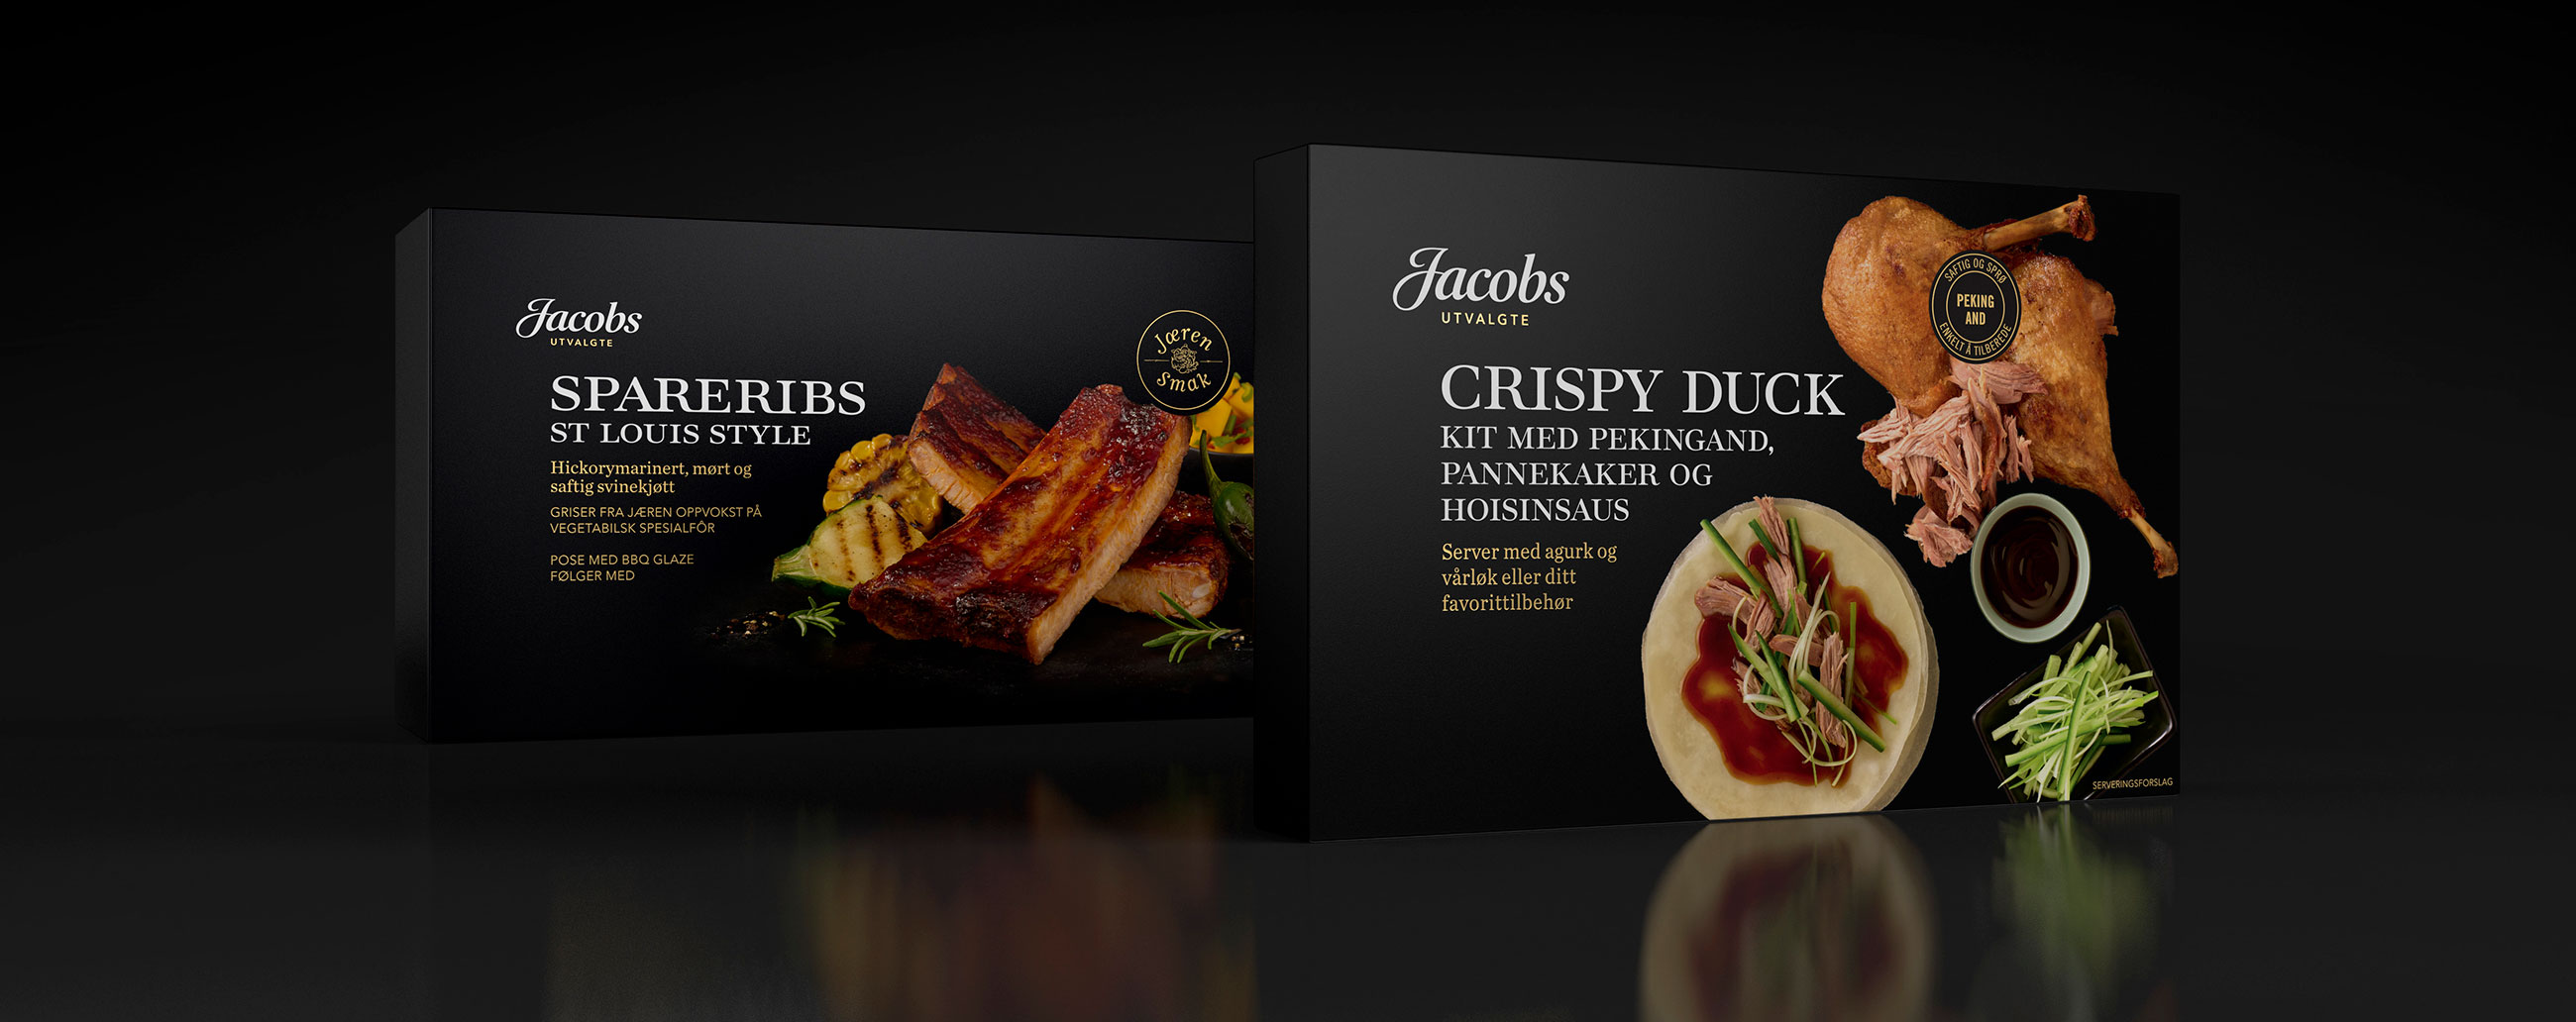 Jacobs Utvalgte Spareribs og Crispy Duck. Emballasje packaging design.